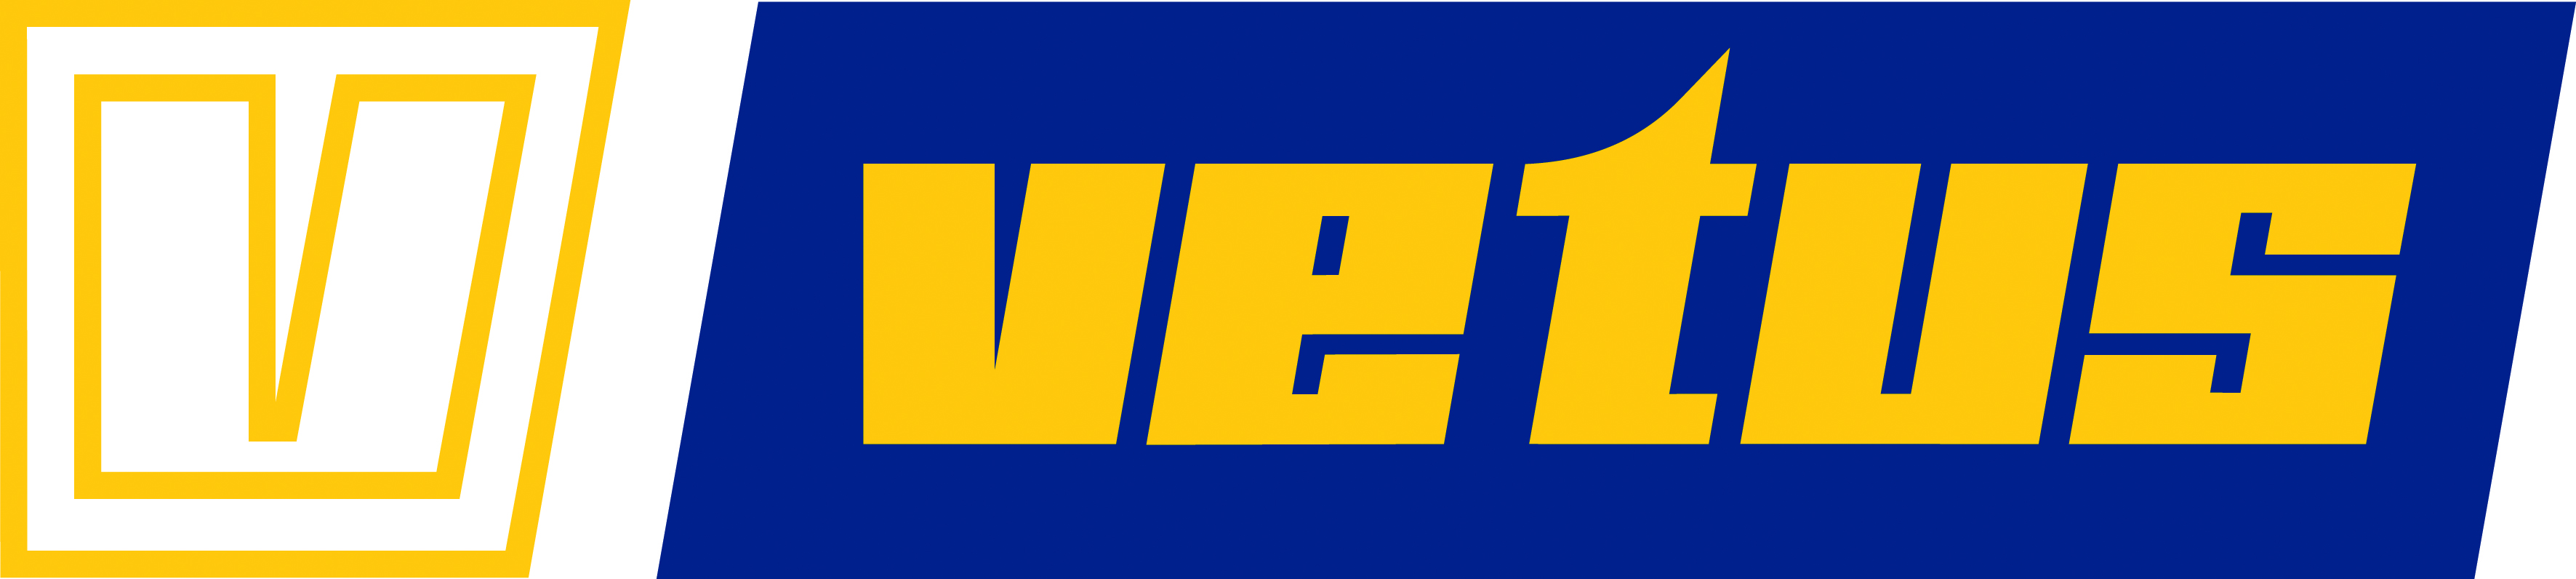 Logo Vetus cmyk